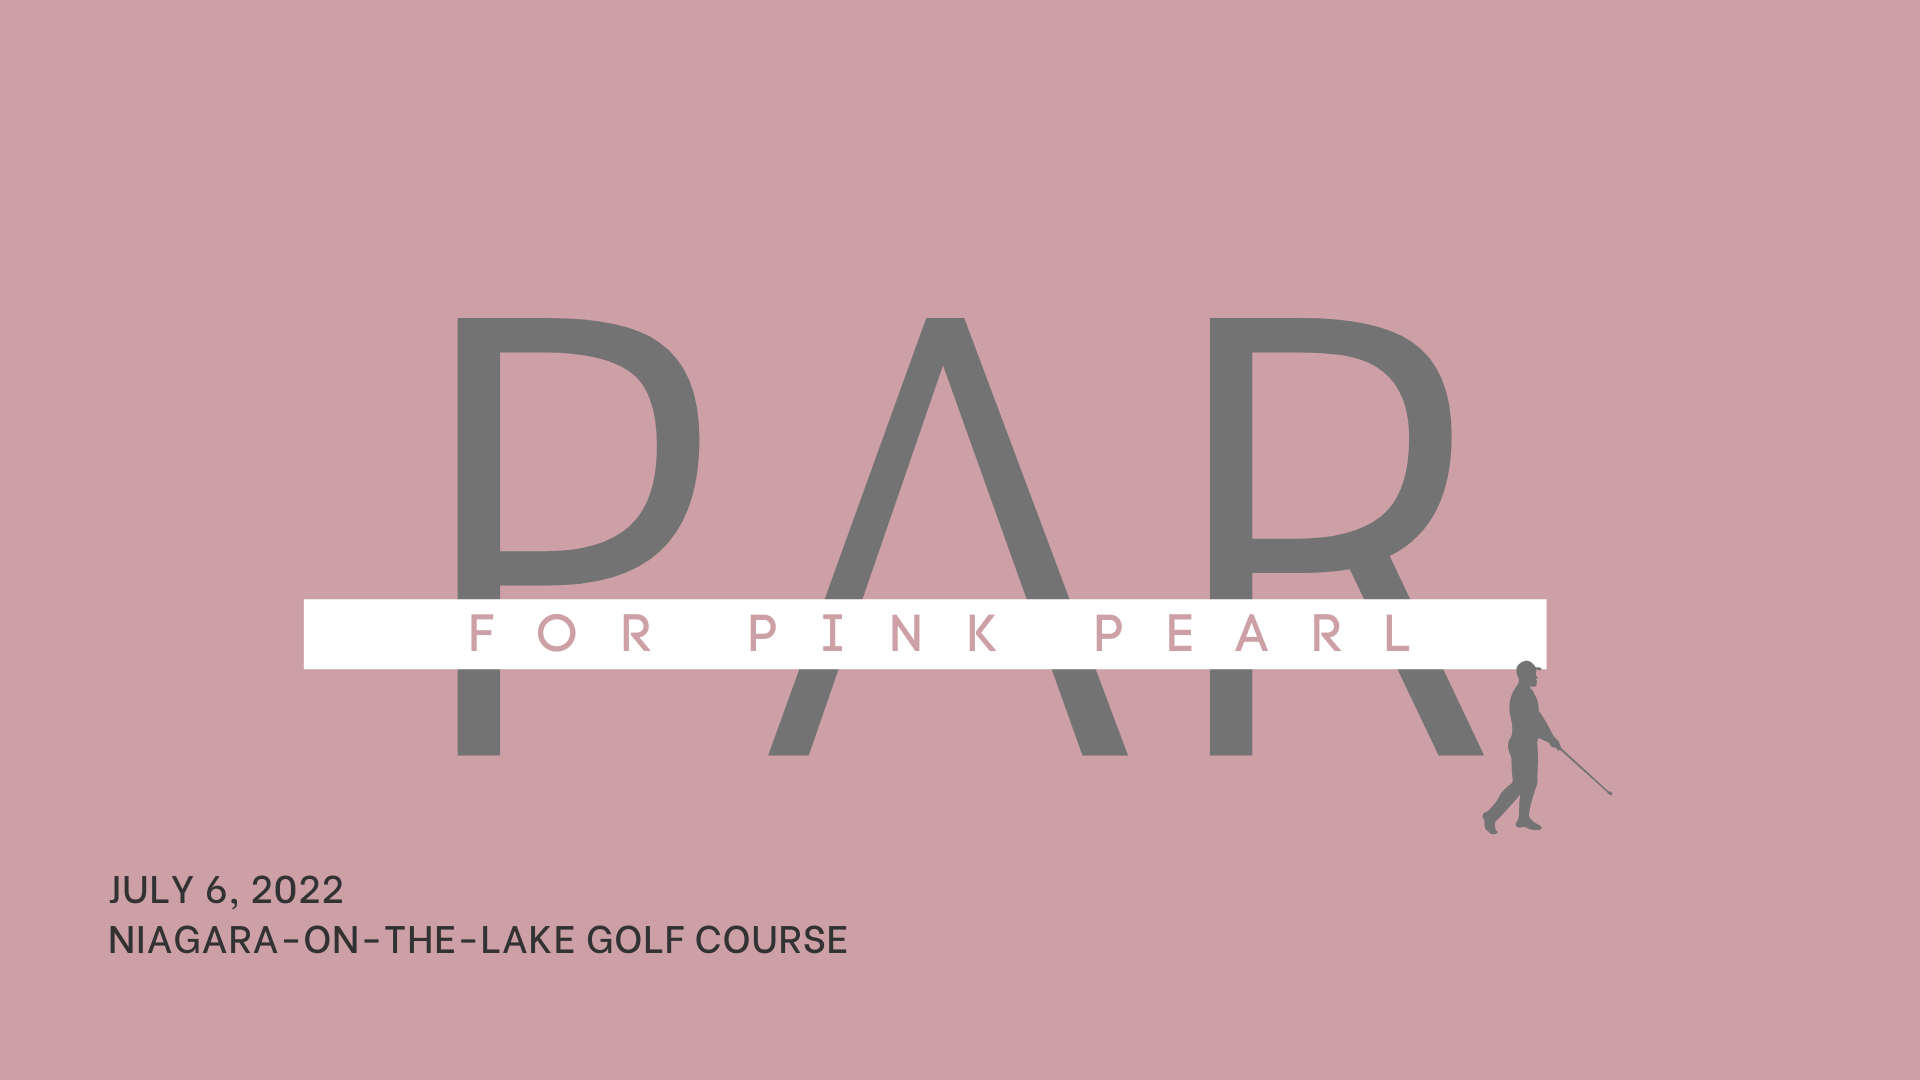 PAR for Pink Pearl